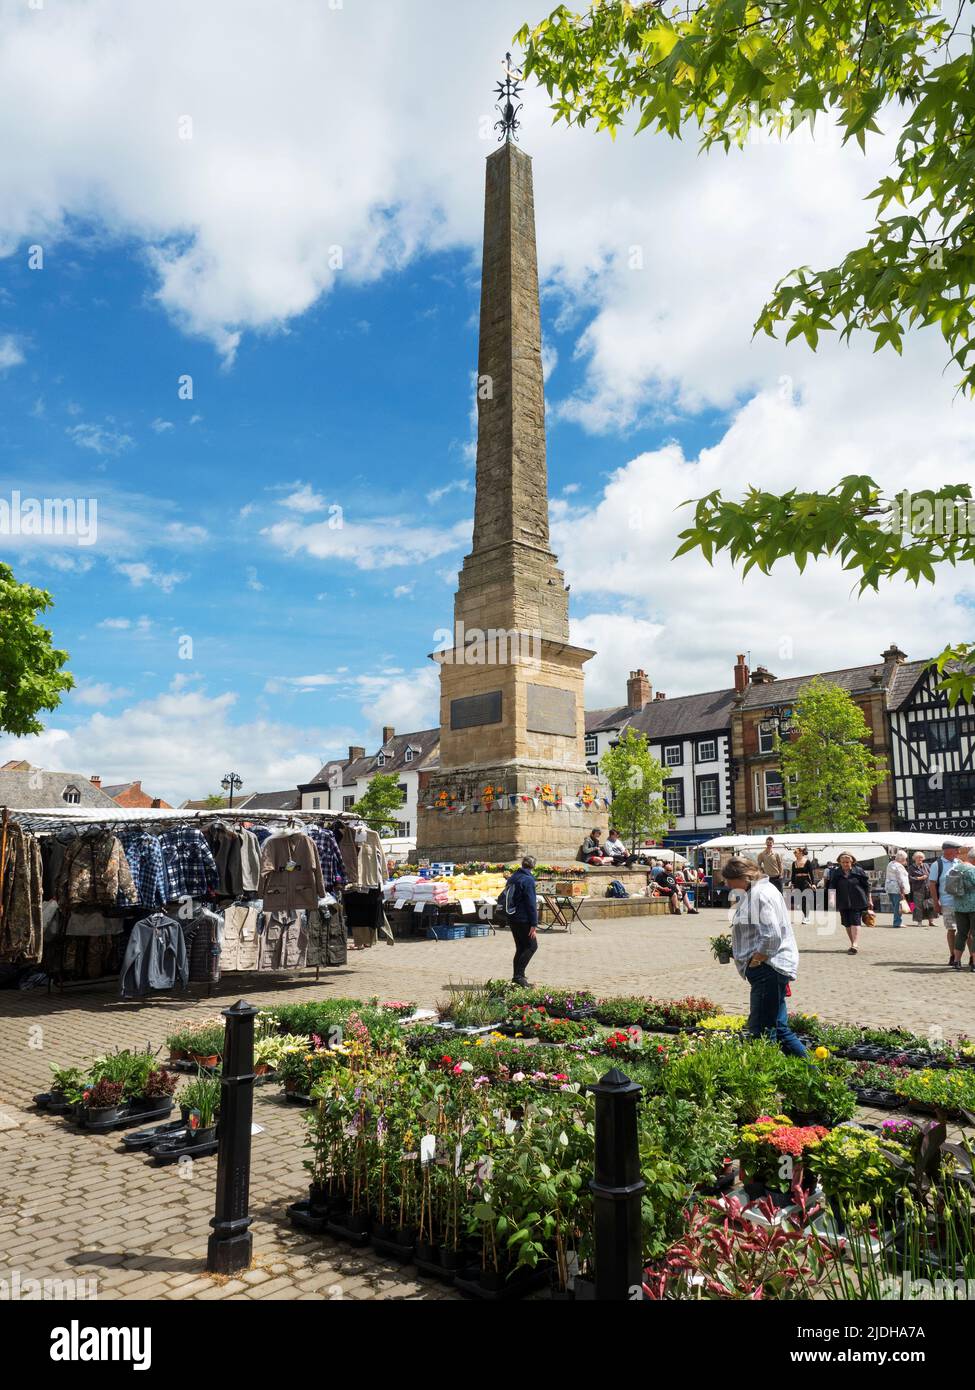 Mercado ocupado alrededor del obelisco en el día del mercado en Ripon North Yorkshire England Foto de stock